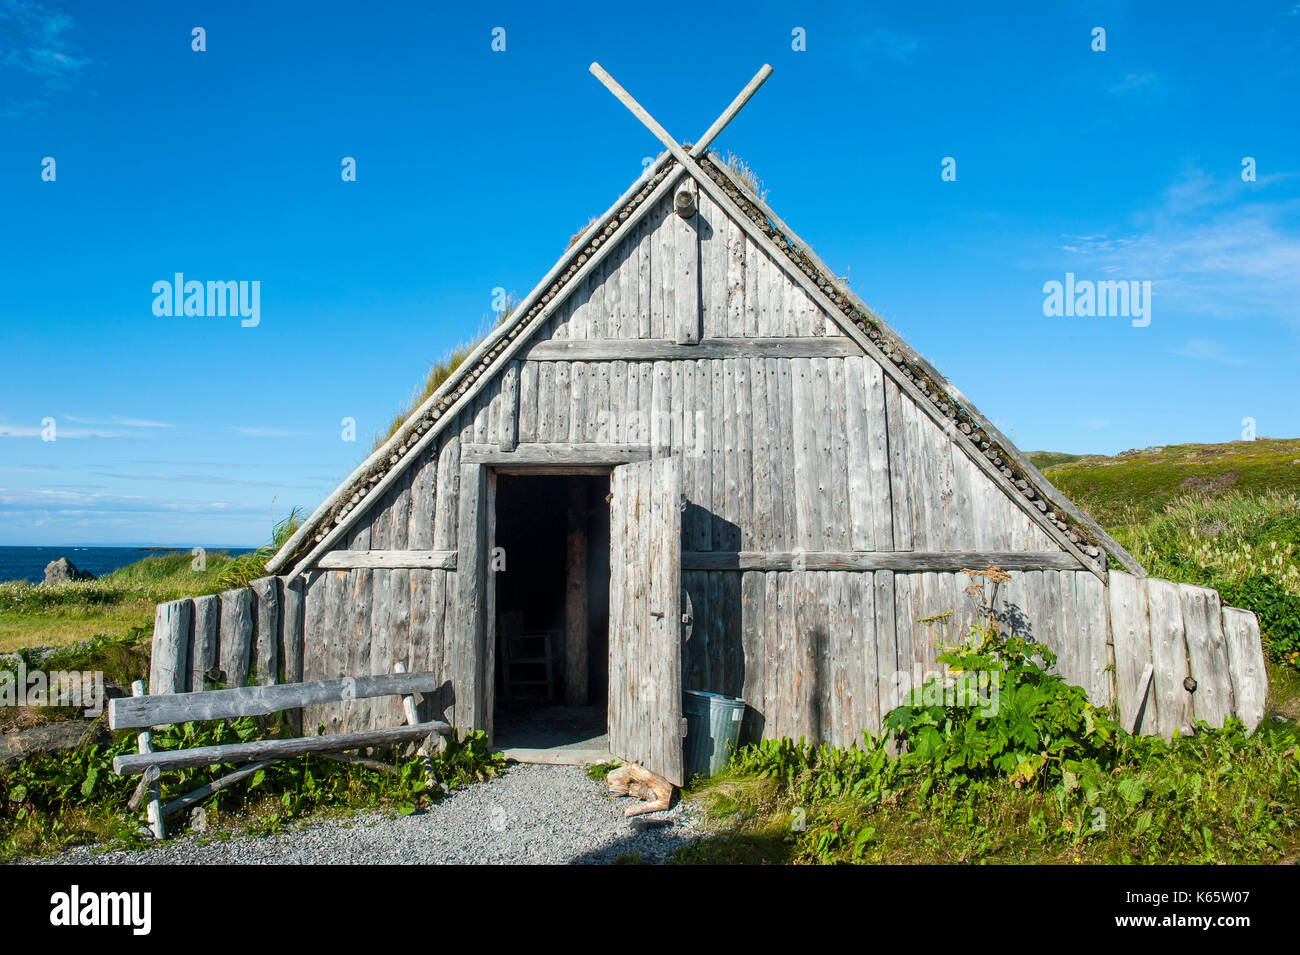 Bâtiment traditionnel viking, norstead village viking, la reconstruction d'un établissement de l'âge viking, Terre-Neuve, Canada Banque D'Images